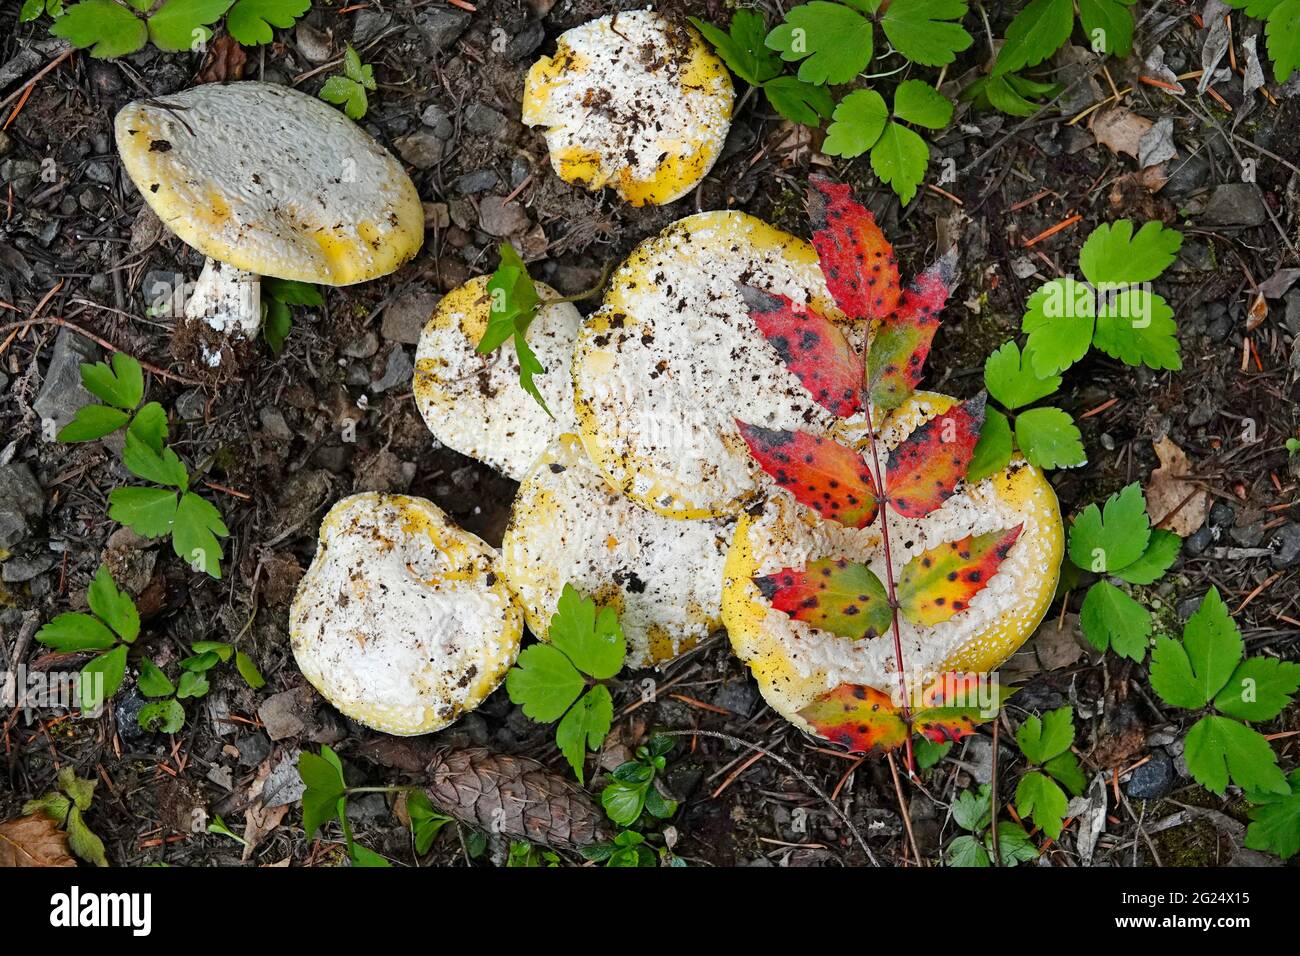 Amanita aprica, también conocida como la amanita del sol, es un hongo venenoso que crece en el noroeste del Pacífico, usualmente en bosques de pinos/abetos de Douglas. Foto de stock